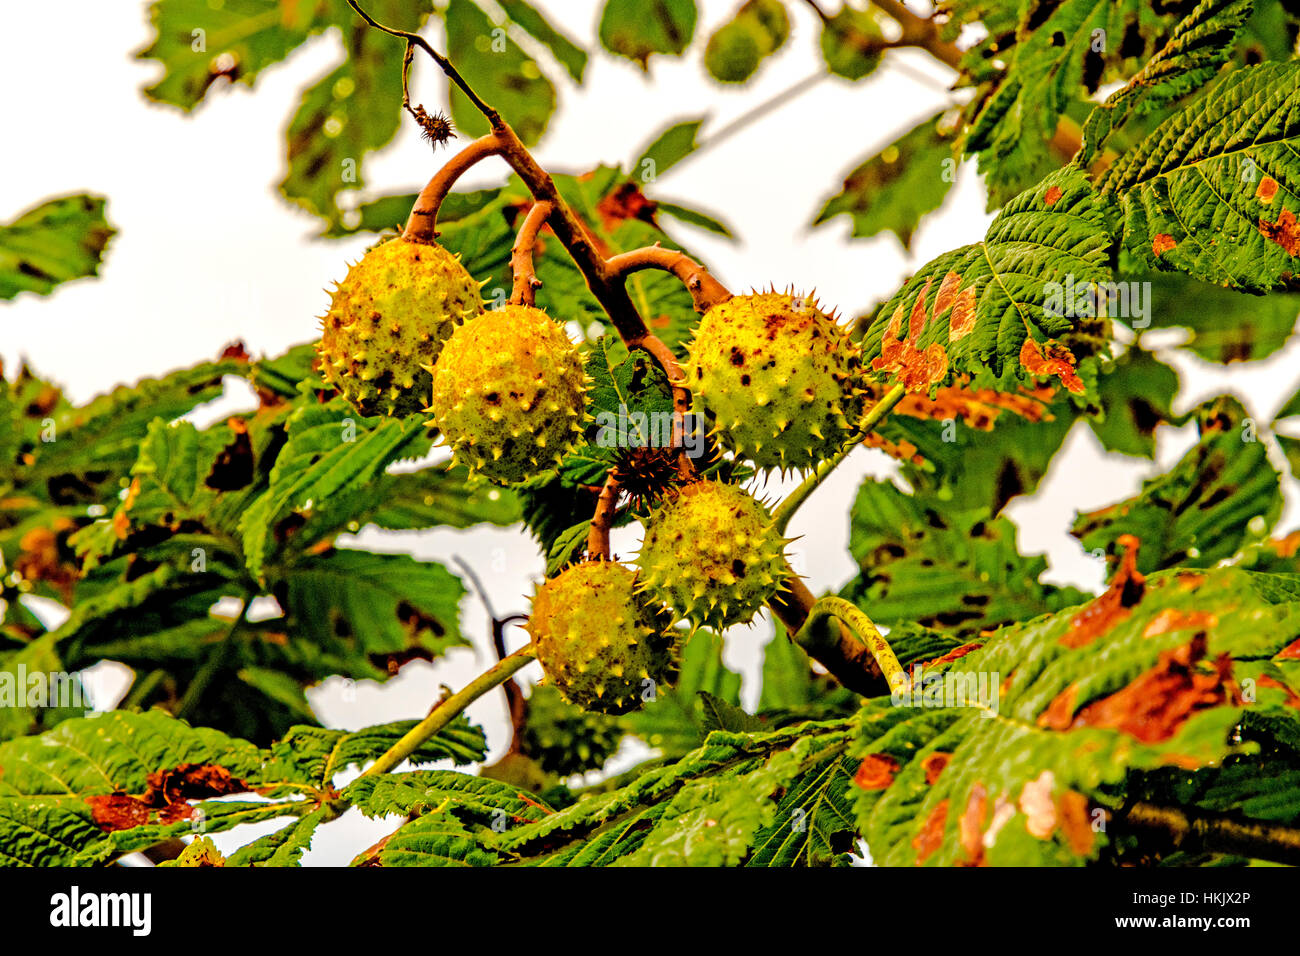 Kastanien am baum, chestnuttree Foto Stock